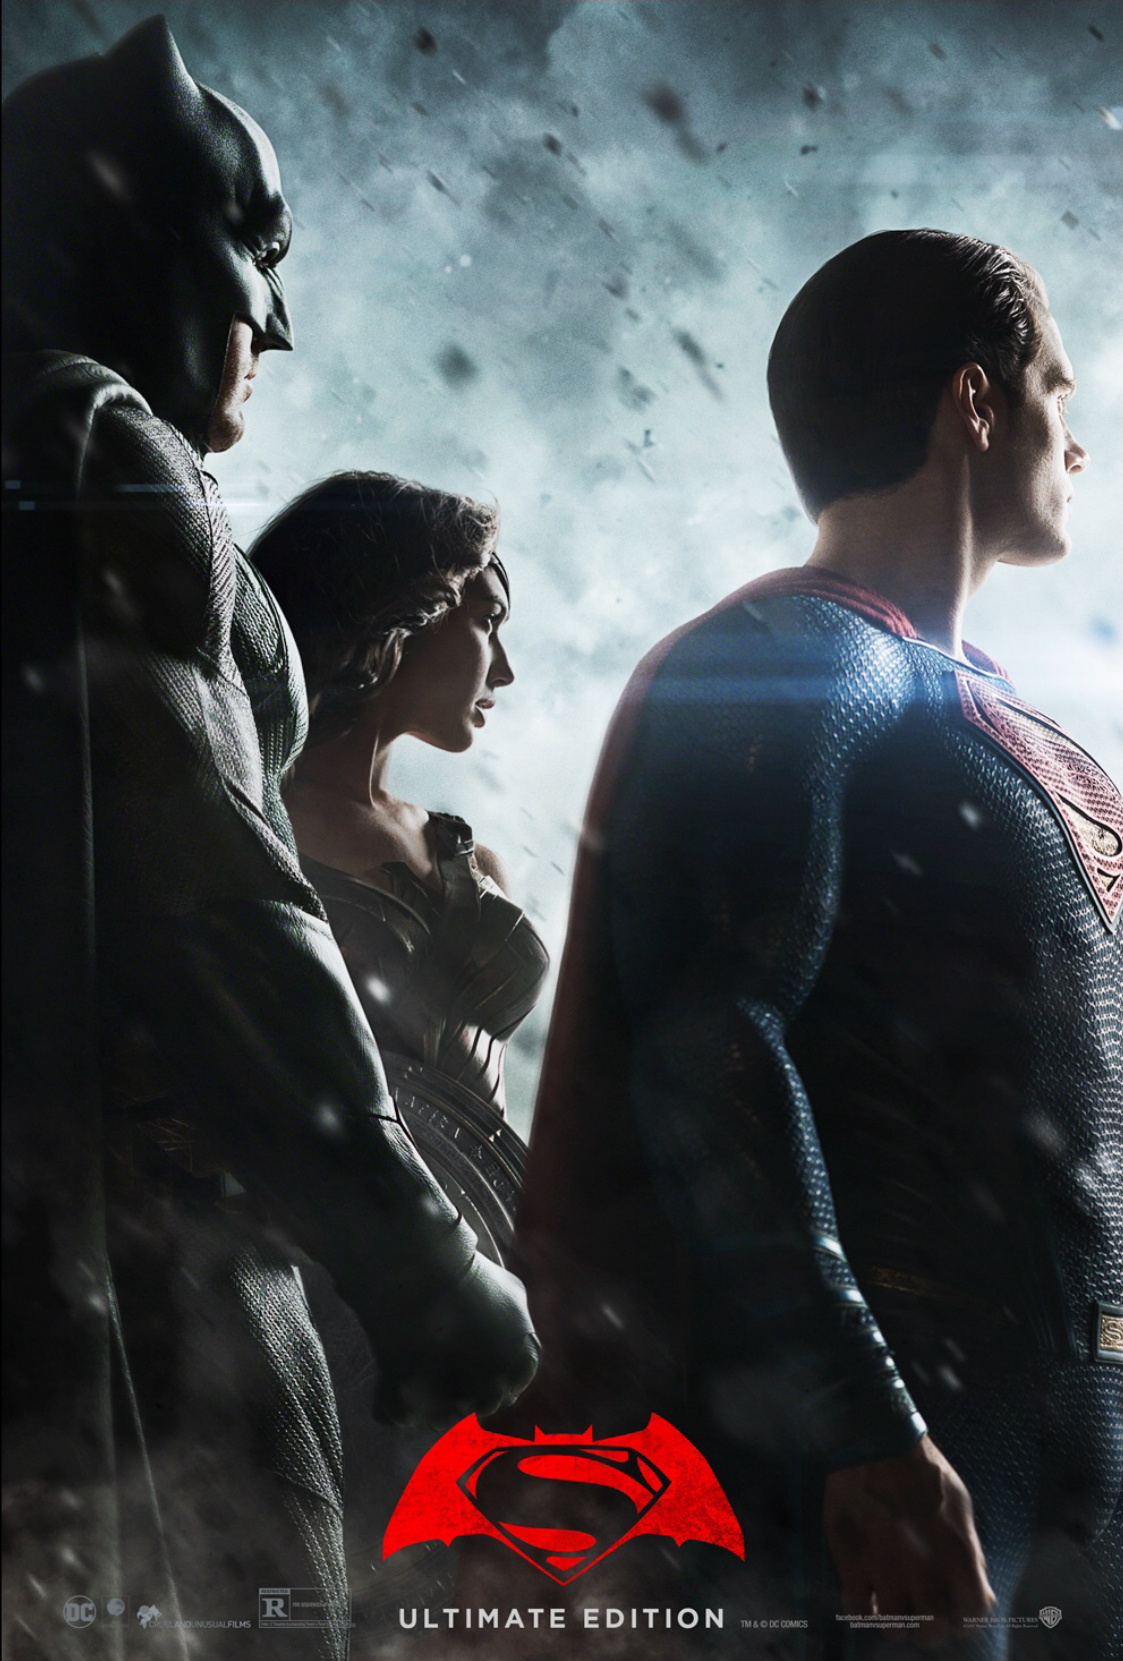 images1/zack-snyder-batman-vs-superman-ultimate-edition-poster.png